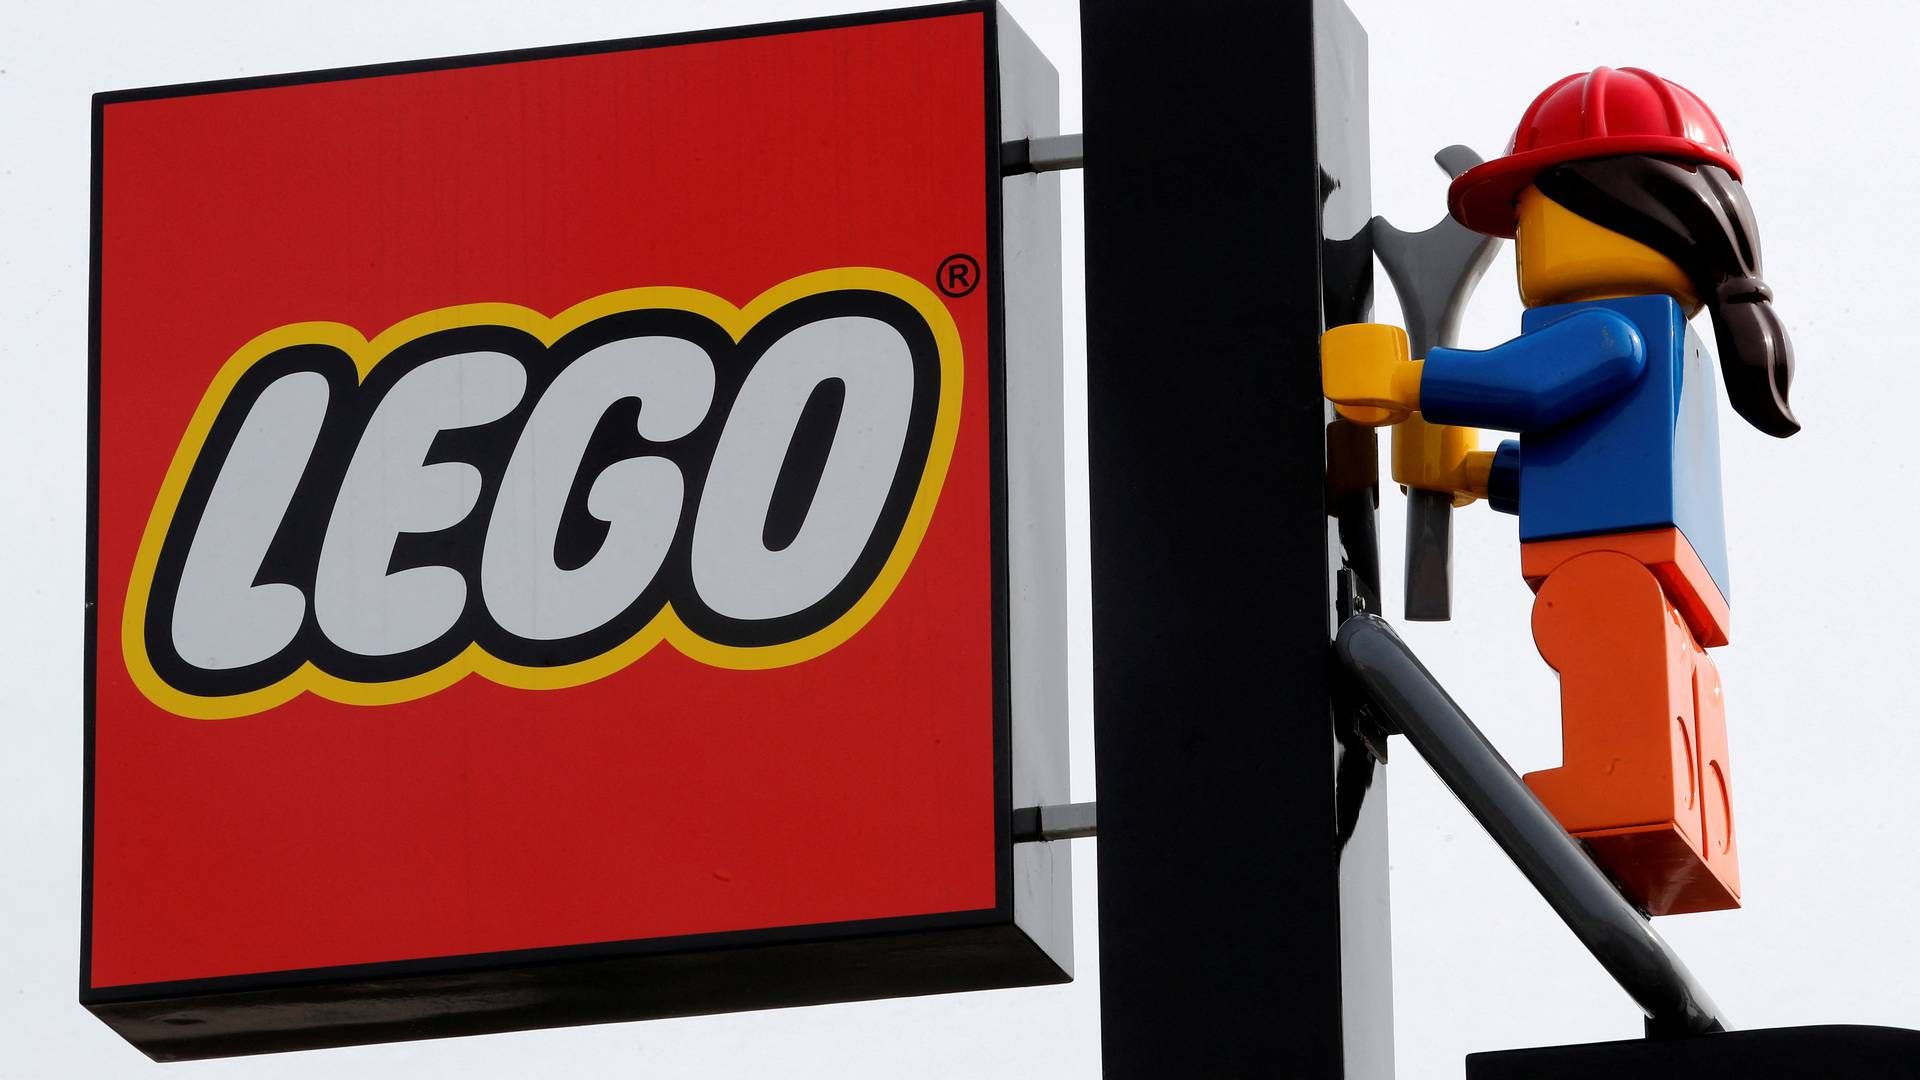 Lego, Novo Nordisk og Mærsk indtager første-, anden- og tredjepladsen i Berlingskes imagemåling - på linje med sidste år.